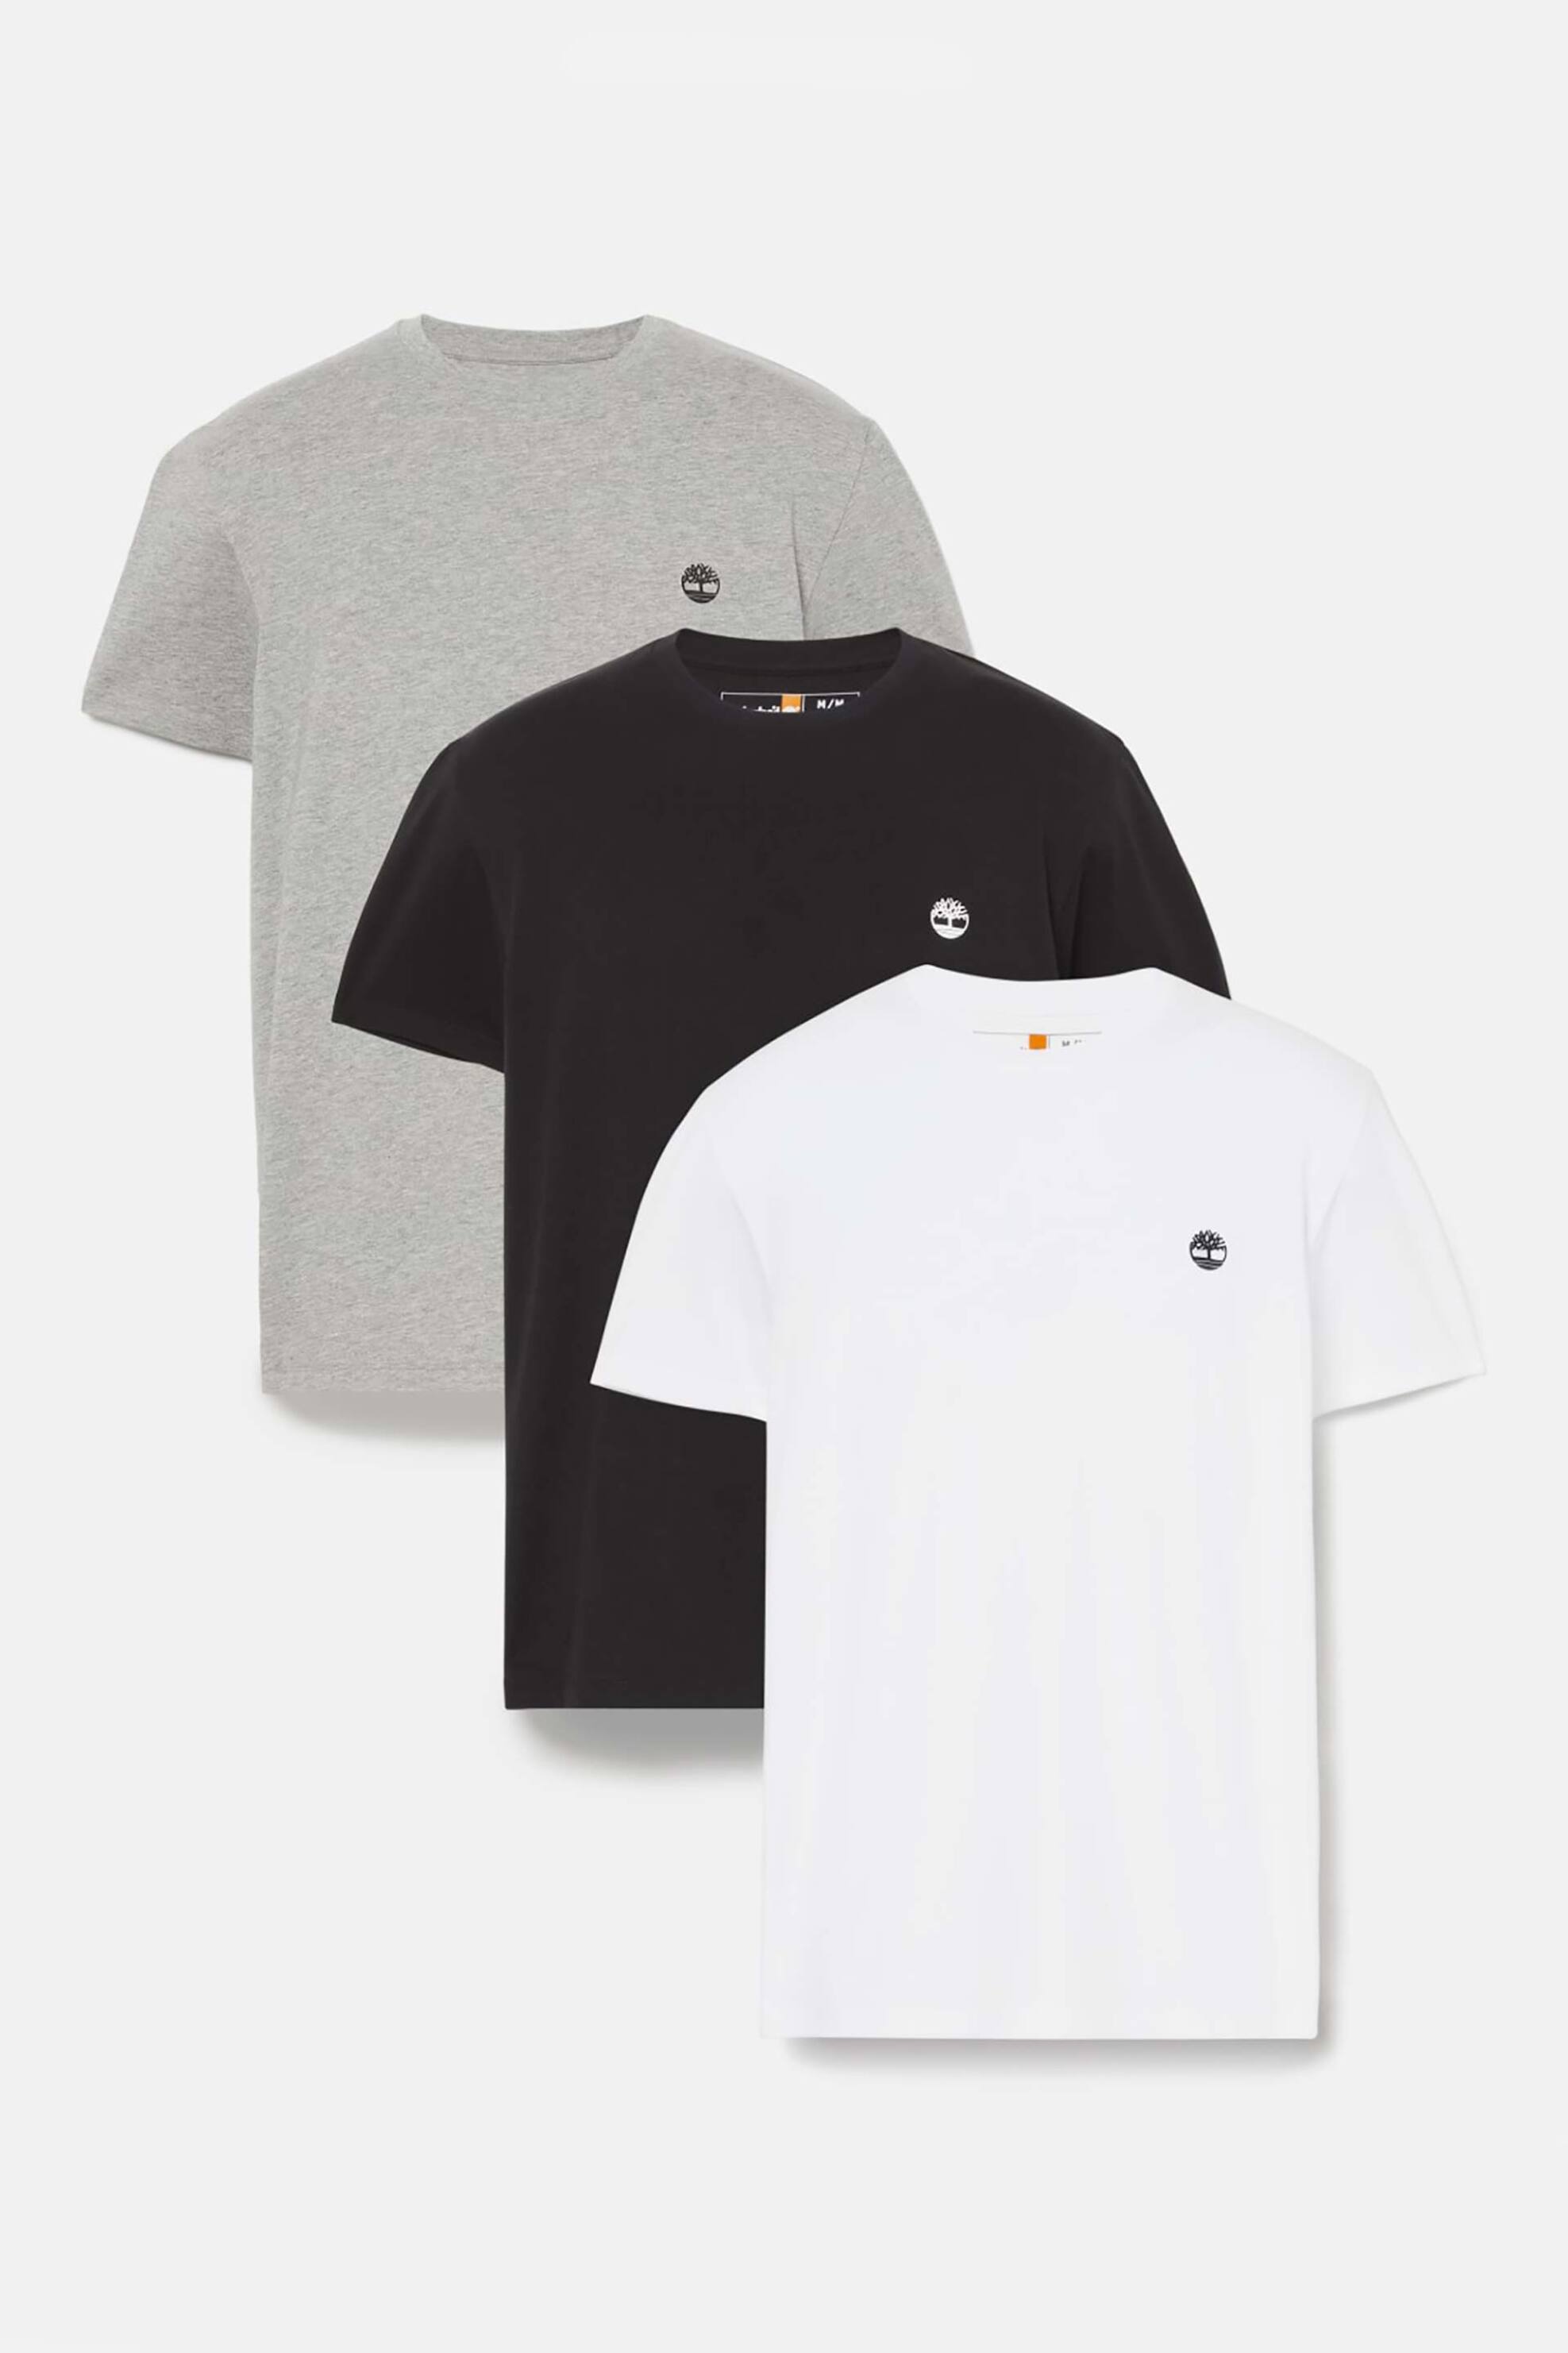 Ανδρική Μόδα > Ανδρικά Ρούχα > Ανδρικές Μπλούζες > Ανδρικά T-Shirts Timberland σετ ανδρικά T-shirts μονόχρωμα με contrast logo print (3 τεμάχια) - TB0A6GH19591 Πολύχρωμο